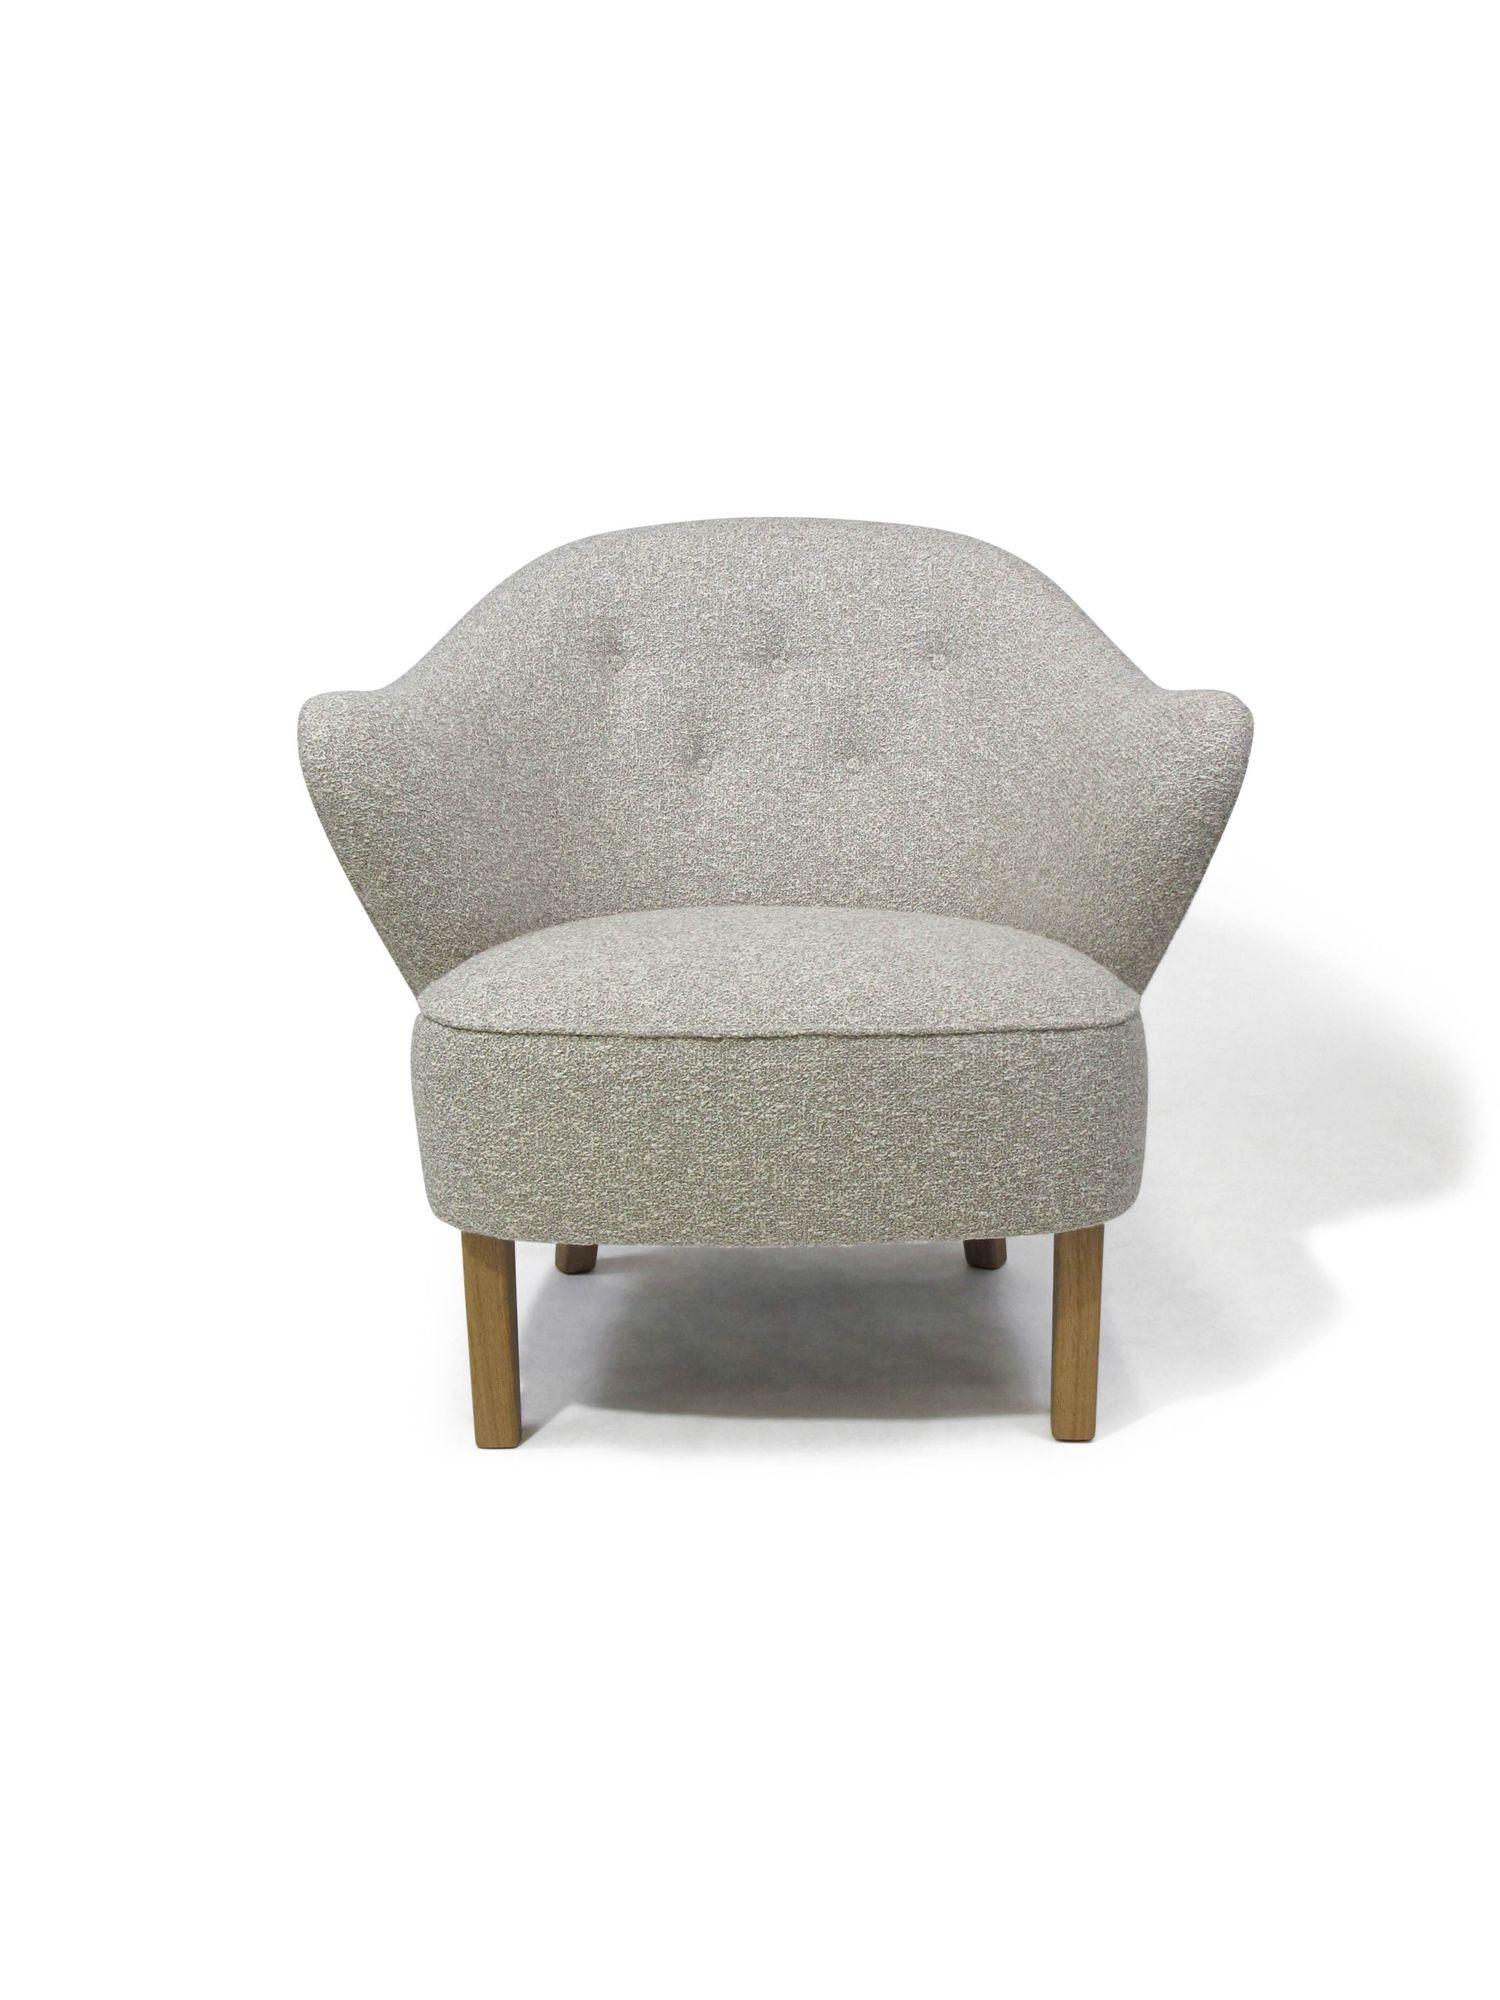 Die Ingeborg Lounge Chairs wurden 1940 von Flemming Lassen entworfen und vom Tischlermeister Jakob Kjaer für die Ausstellung der Copenhagen Cabinetmaker Guild hergestellt. Stühle aus Massivholzrahmen, skulpturale Form, vollständig gepolstert mit